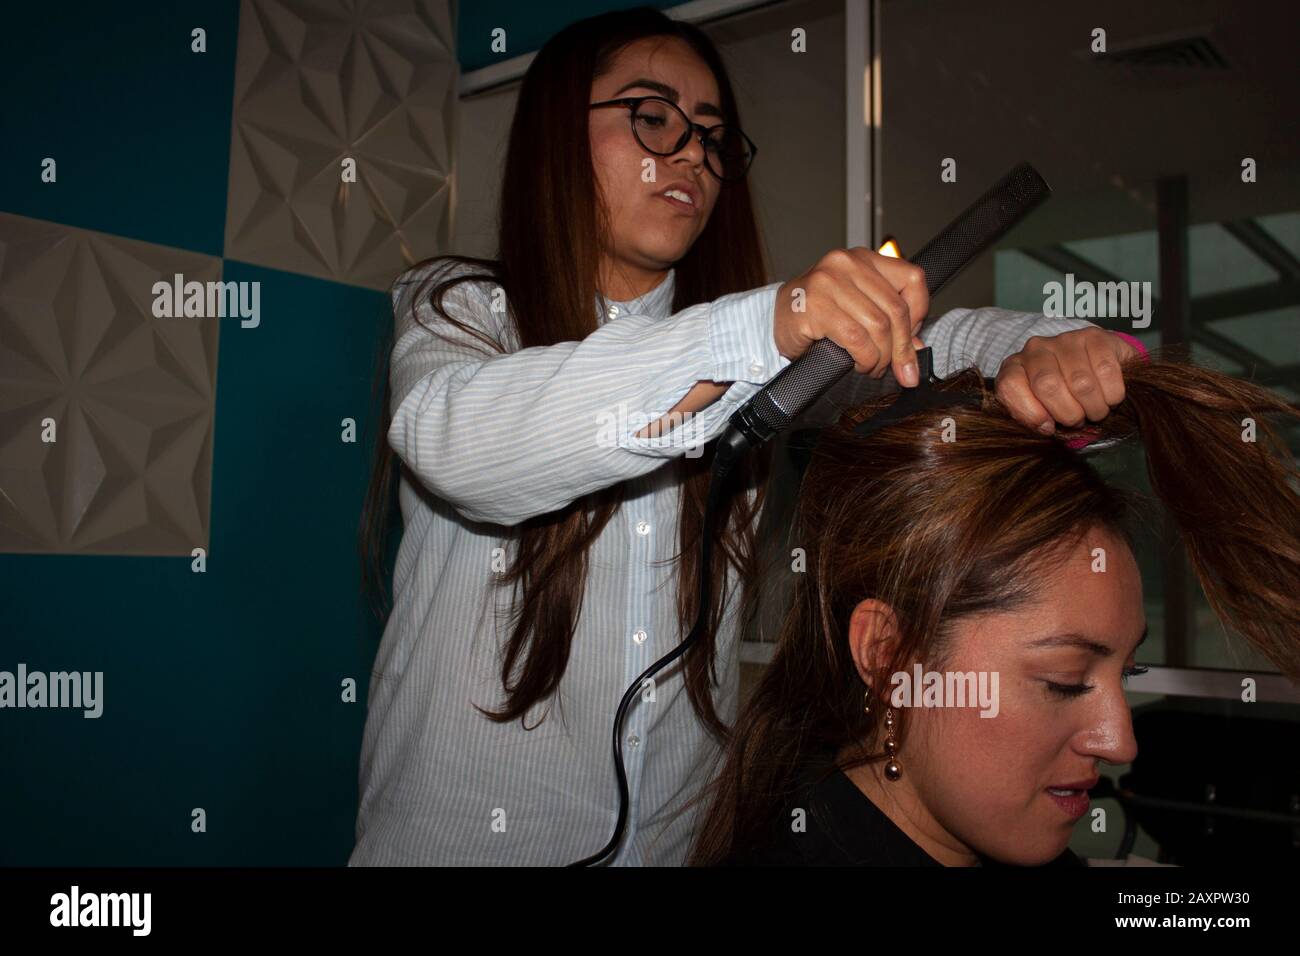 Capelli diritto stylist donna utilizza strumenti di bellezza pinza e spazzola utilizzando le sue mani per pettinare e stilizzare i capelli ambra di una donna brunetta in Messico Foto Stock